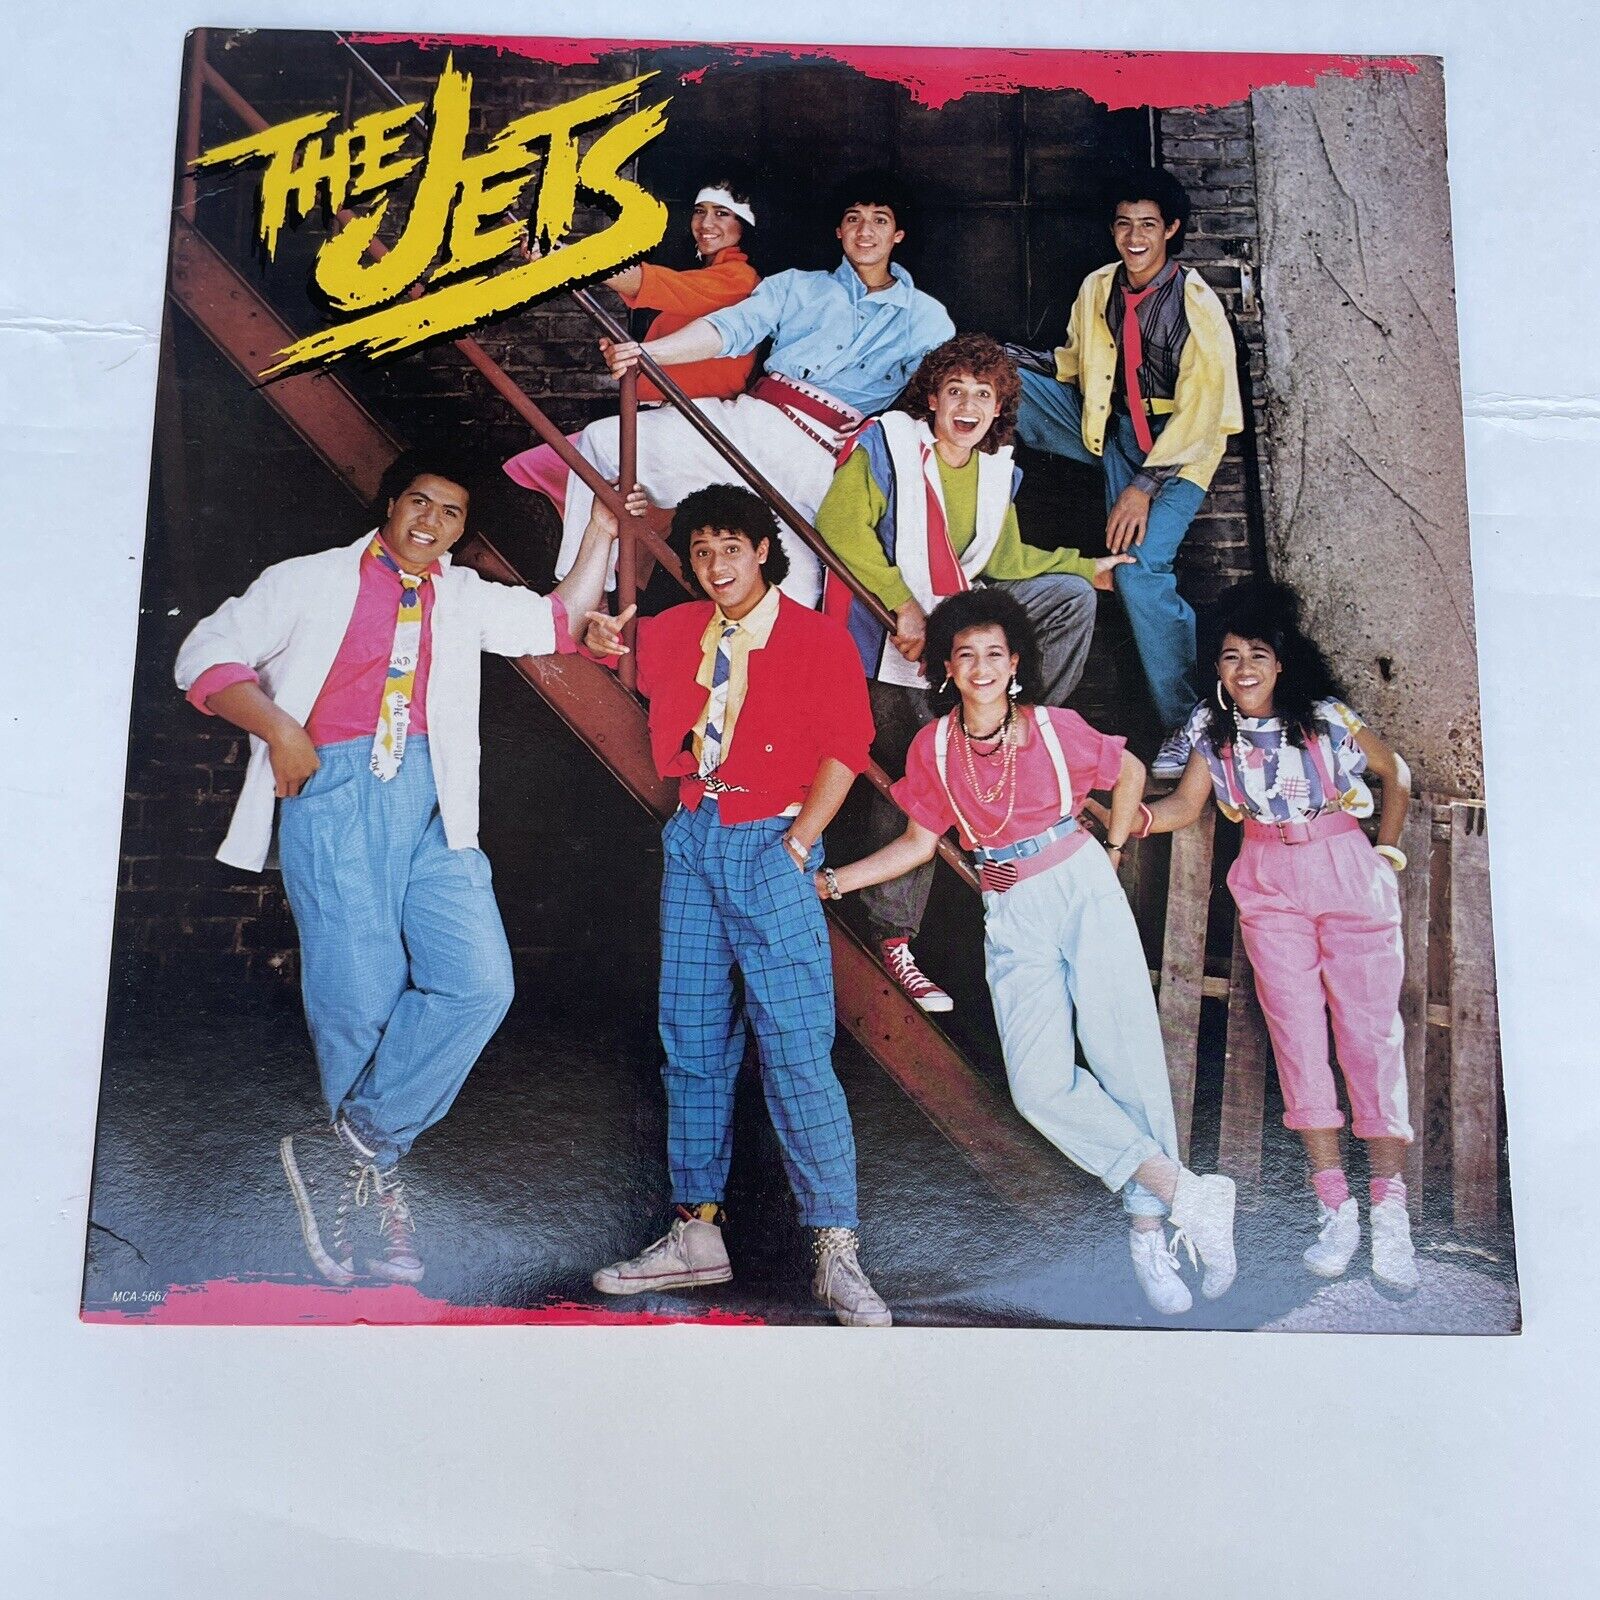 THE JETS ...VINYL ALBUM/RECORD...1985 ...MCA RECORDS - 5667.....